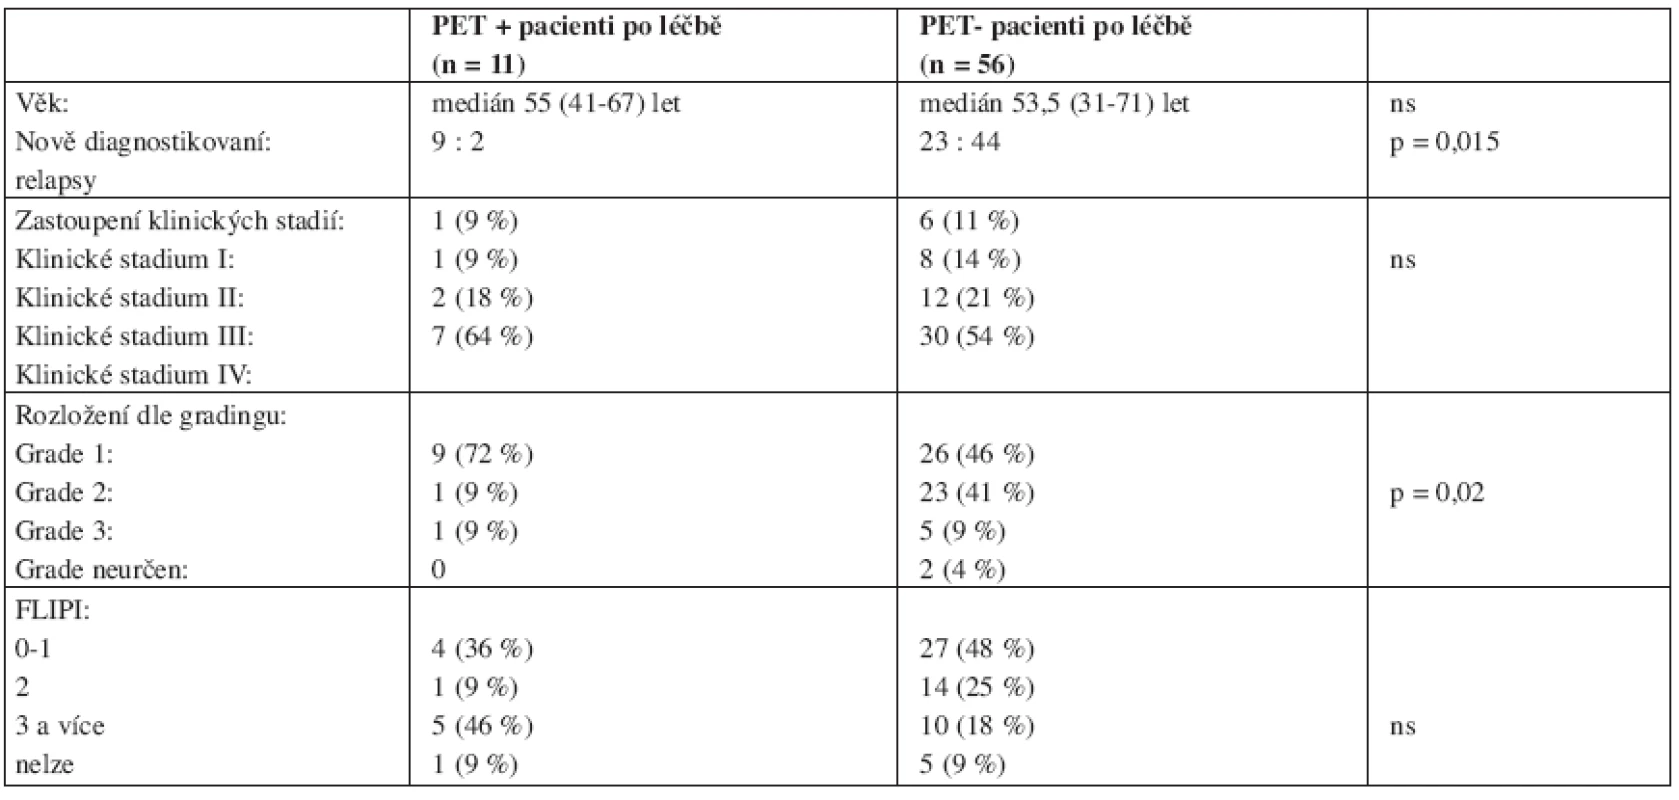 Srovnání významných parametrů skupin PET-pozitivních a PET-negativních pacientů po ukončení léčby.